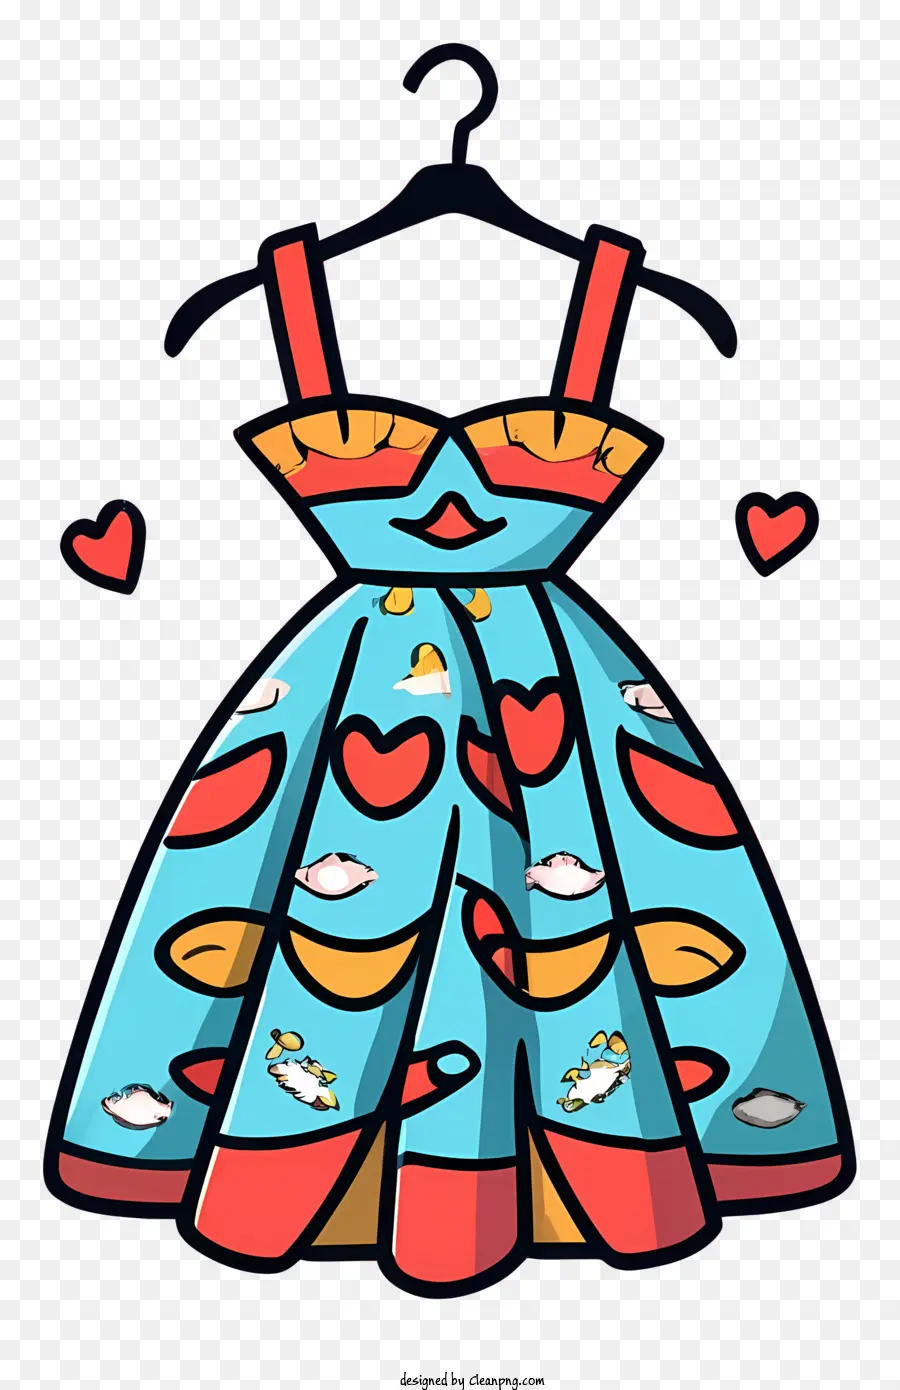 Cartoon Kleid Herzkleid Star Kleid Bogen Detailkleid mit Herzen - Cartoonkleid mit Herzen und Sternen auf Kleiderbügel